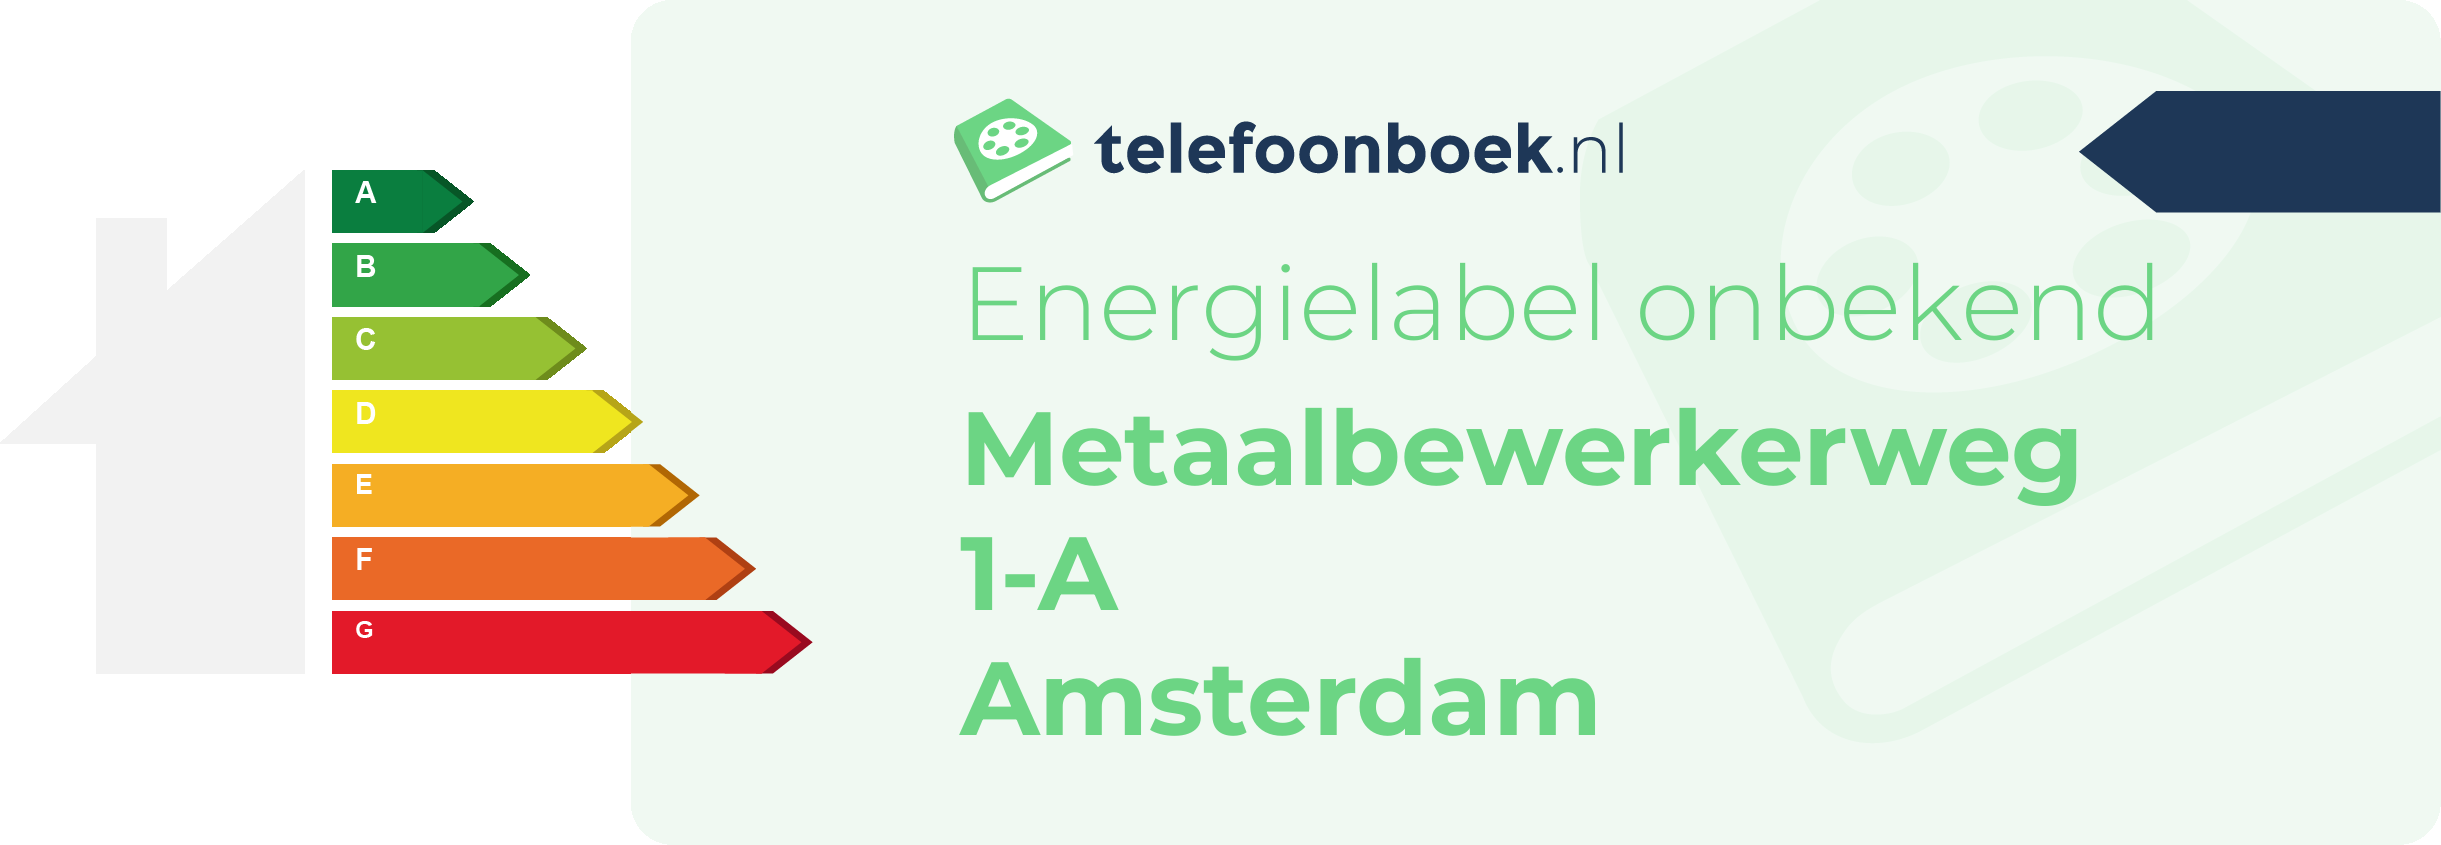 Energielabel Metaalbewerkerweg 1-A Amsterdam